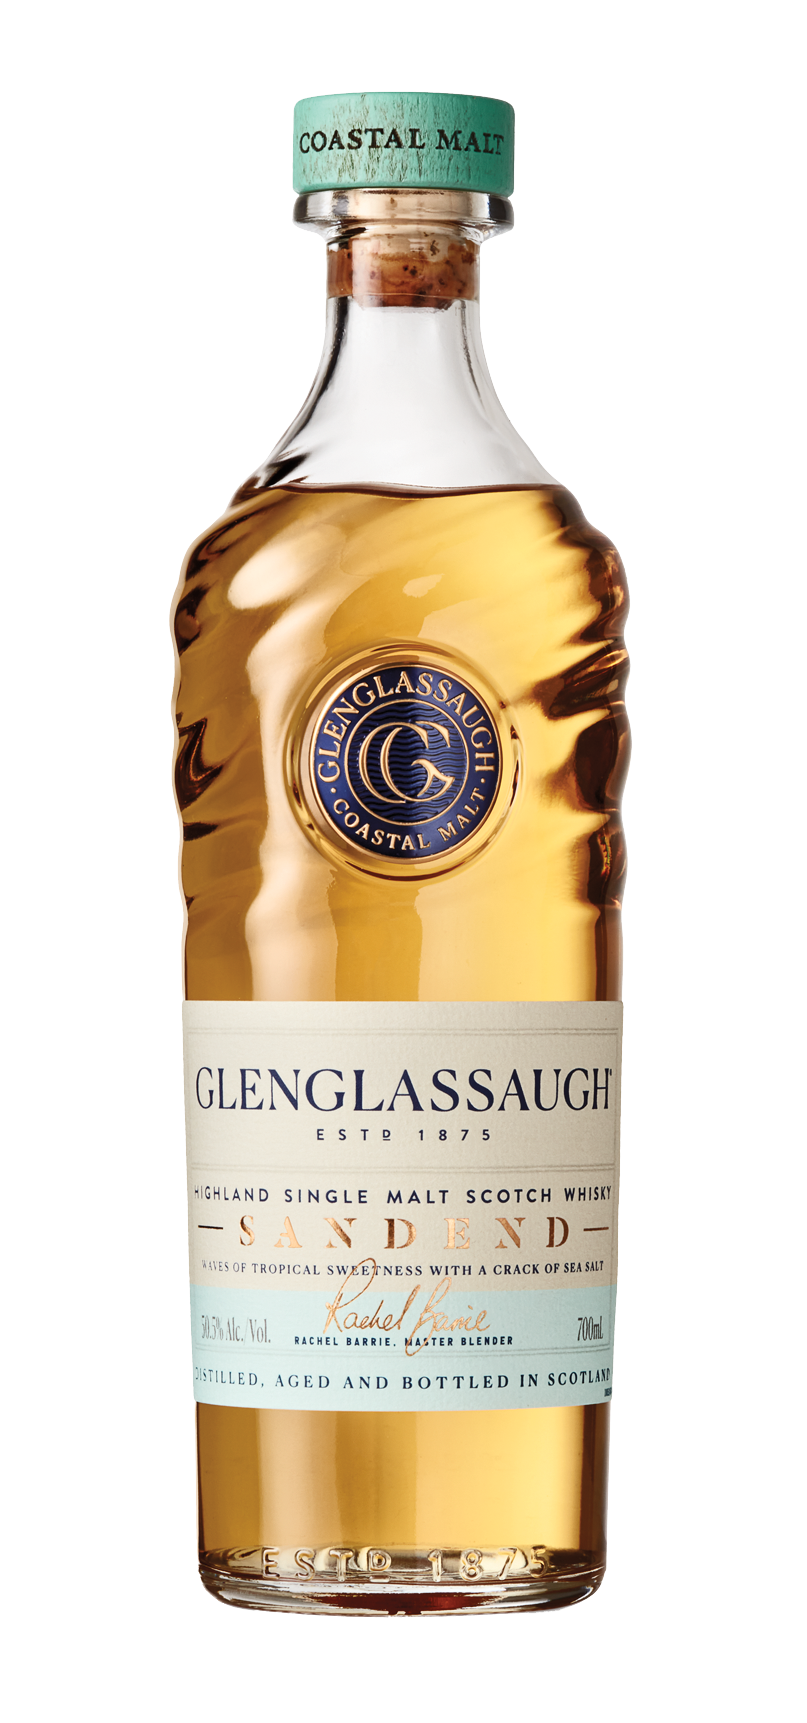 Glenglassaugh Highland Single Malt Scotch Whisky Sandend